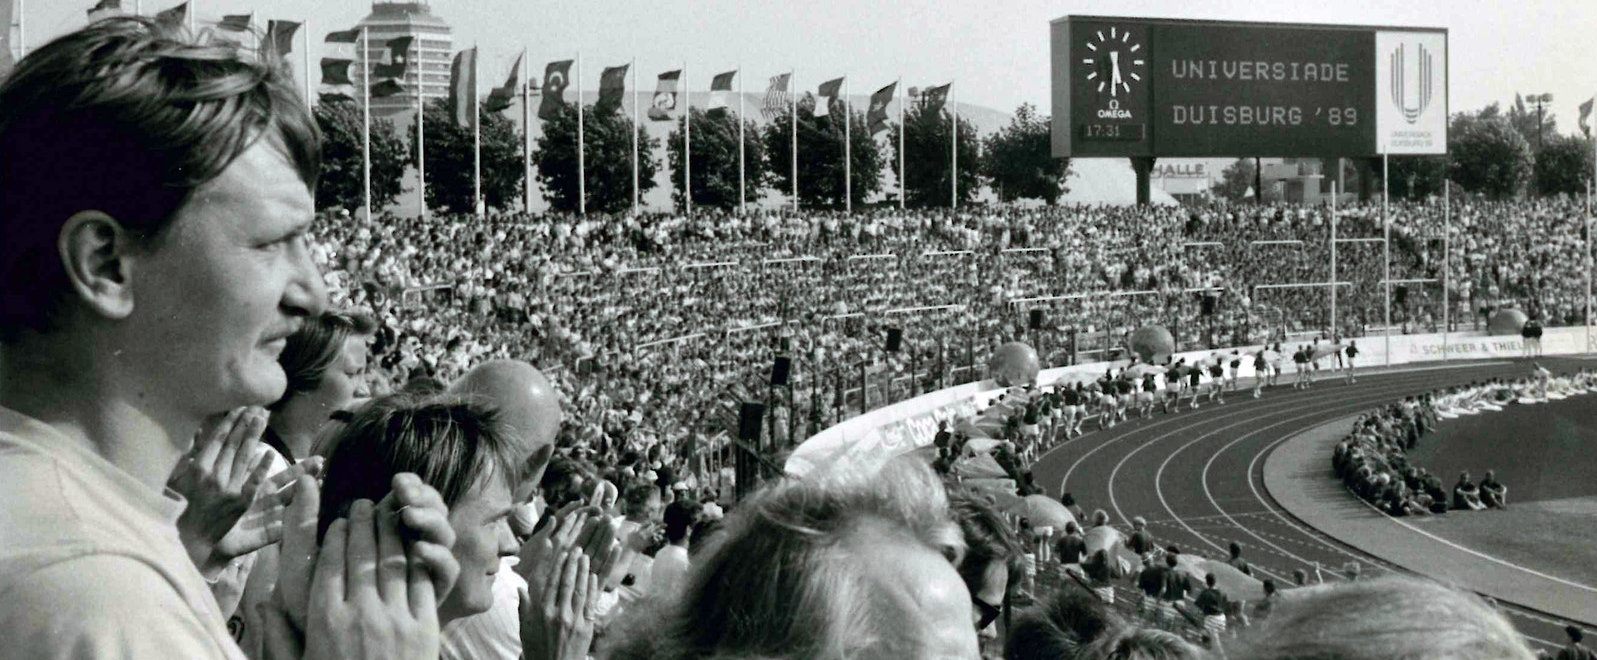 Das schwarz-weiß Foto zeigt Zuschauer im Stadion zur Universiade in Duisburg 1989.